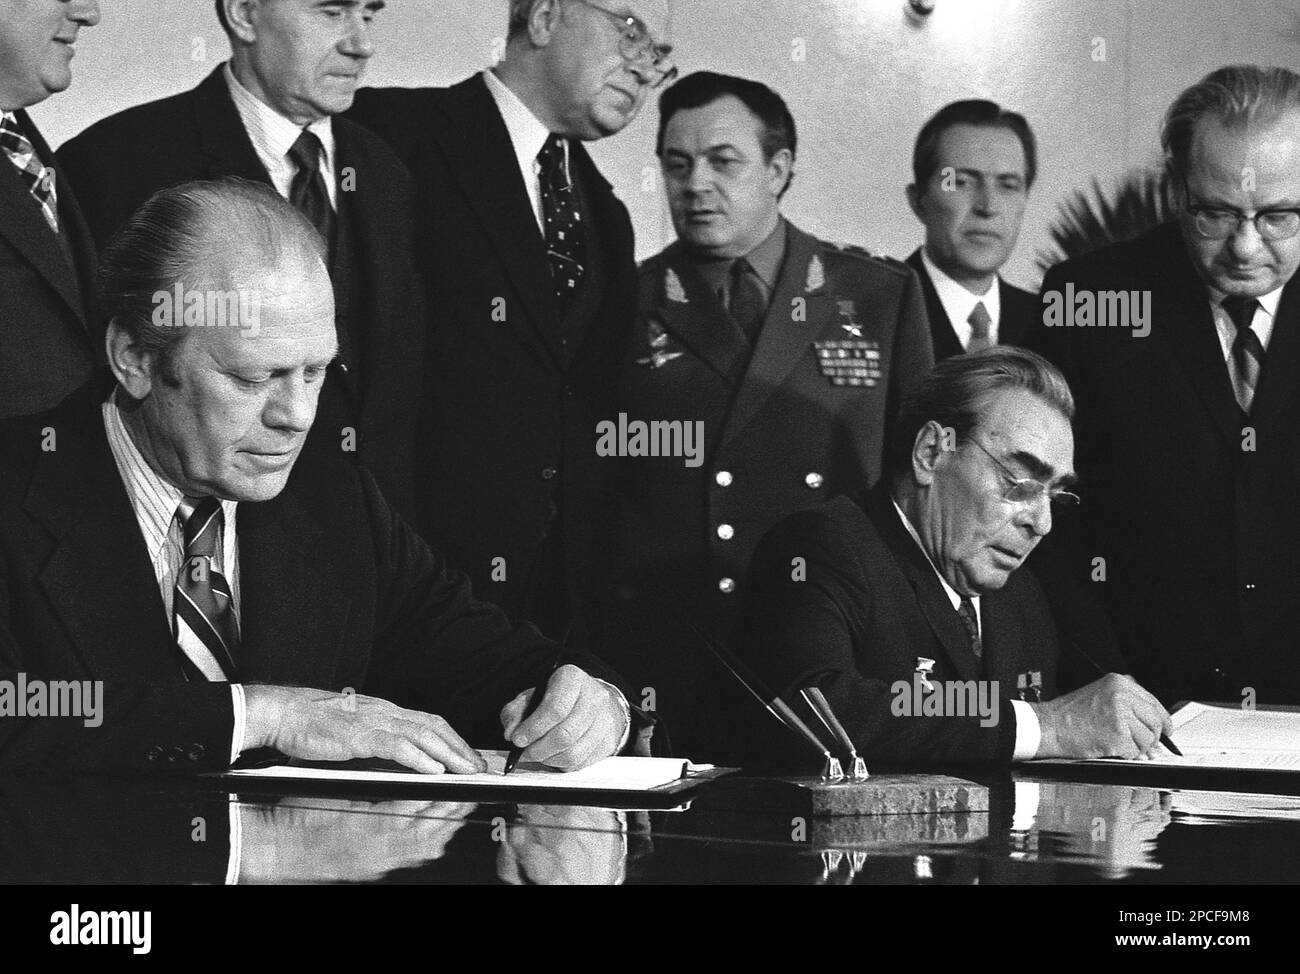 1974 : le premier ministre russe Leonid Ilyich Brejnev ( 1906 - 1982 ) et le président américain GERALD FORD ( 1913 - 2006 ) signent un communiqué commun à la suite de discussions sur la limitation des armes stratégiques offensives. Le document a été signé dans la salle de conférence du Sanitarium d'Okeansky, Vladivostok, URSS . Brejnev a été secrétaire général du Parti communiste de l'Union soviétique (et donc chef politique de l'Union soviétique) de 1964 à 1982, occupant ce poste plus longtemps que quiconque sauf Joseph Staline. Il a été deux fois président du Présidium du Soviet suprême (chef d'État), f Banque D'Images